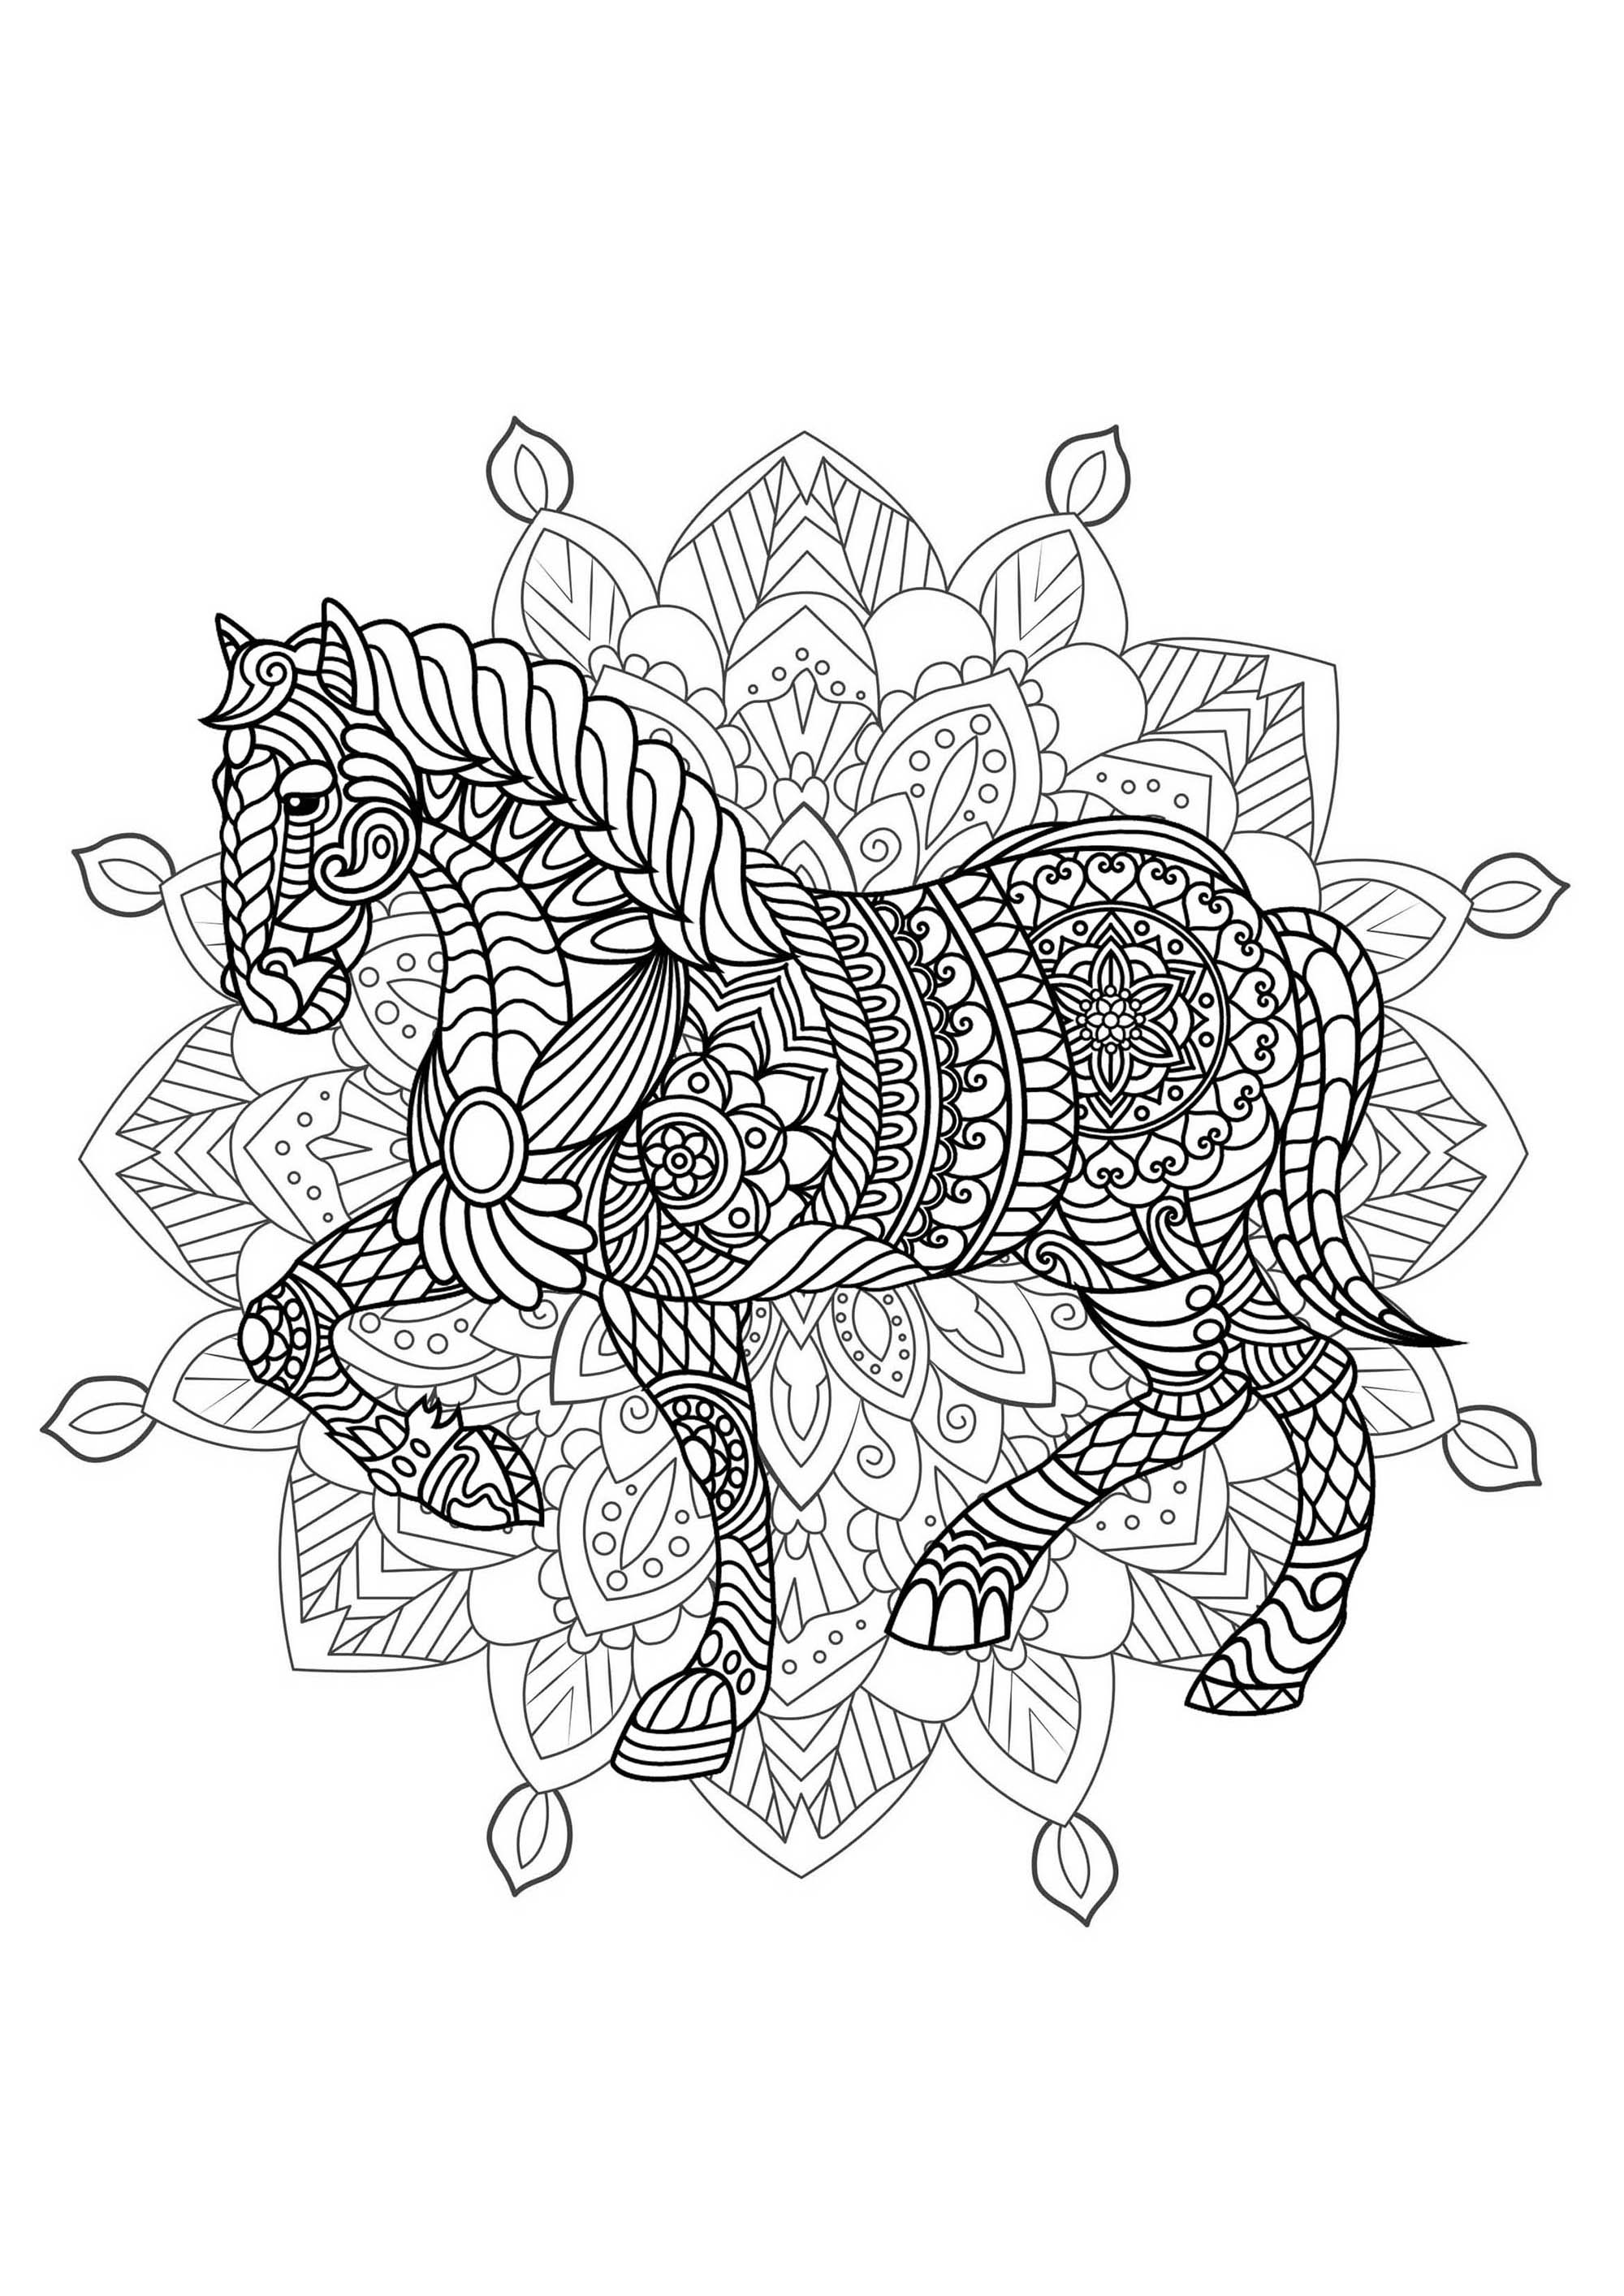 Mandala da colorare con bellissimi cavalli e disegni complessi sullo sfondo